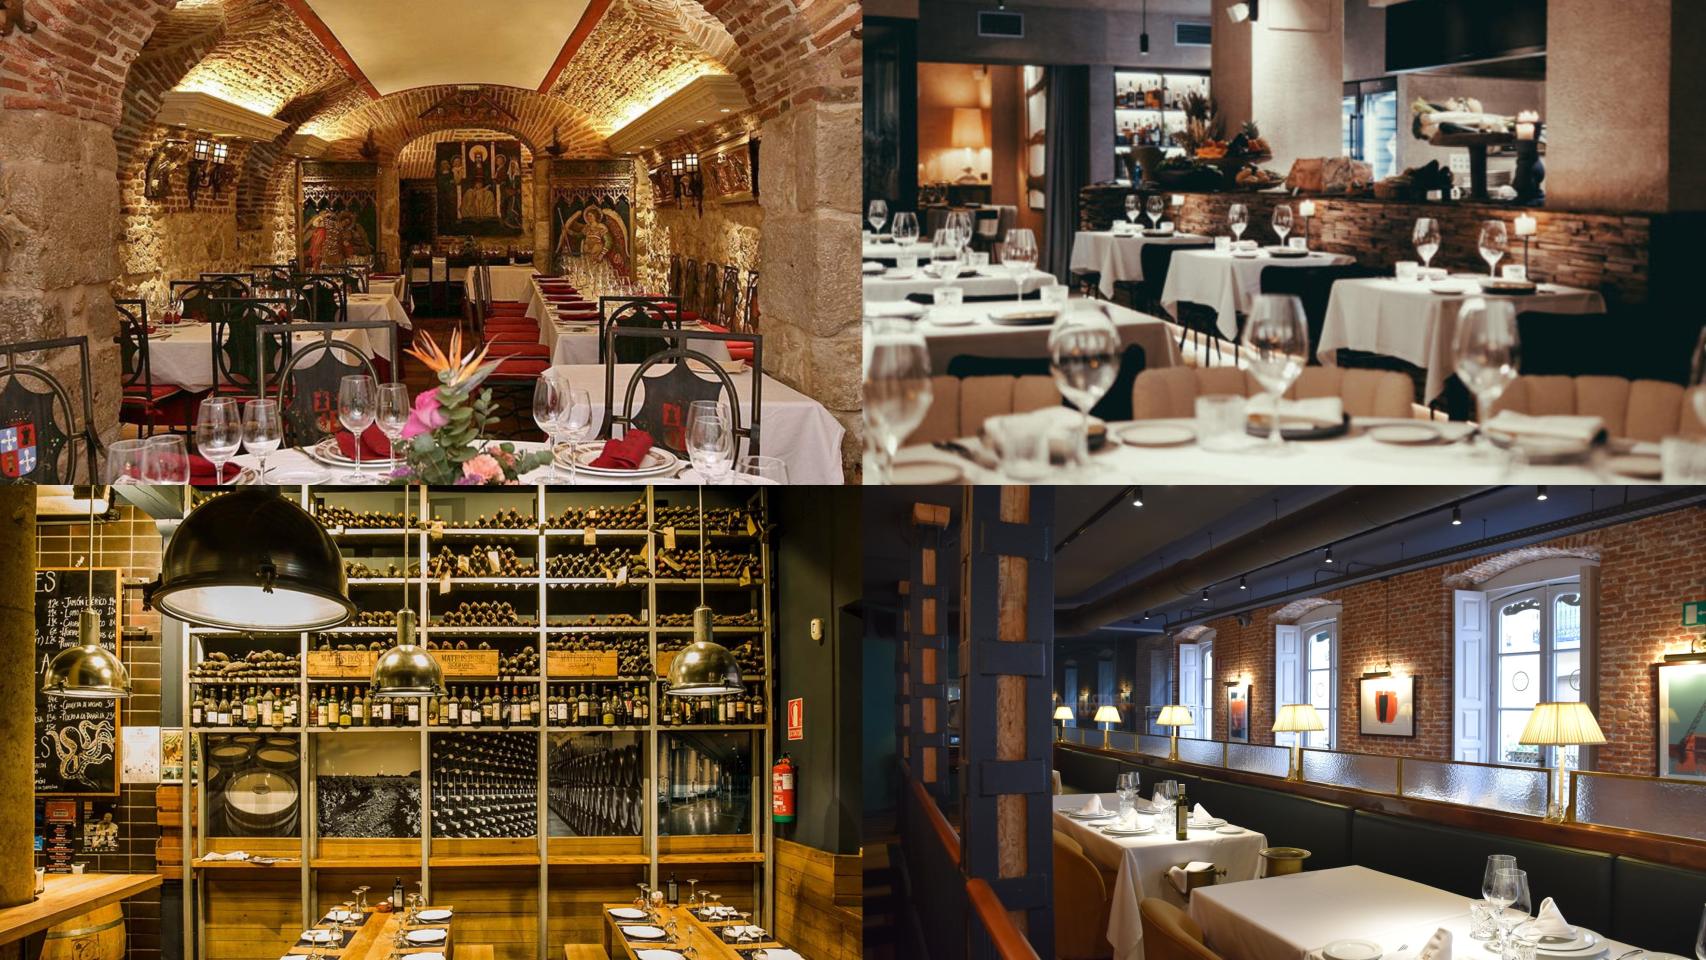 Imágenes de los restaurantes La parrilla de San Lorenzo, Raza, Vino Tinto y Los Ilustres